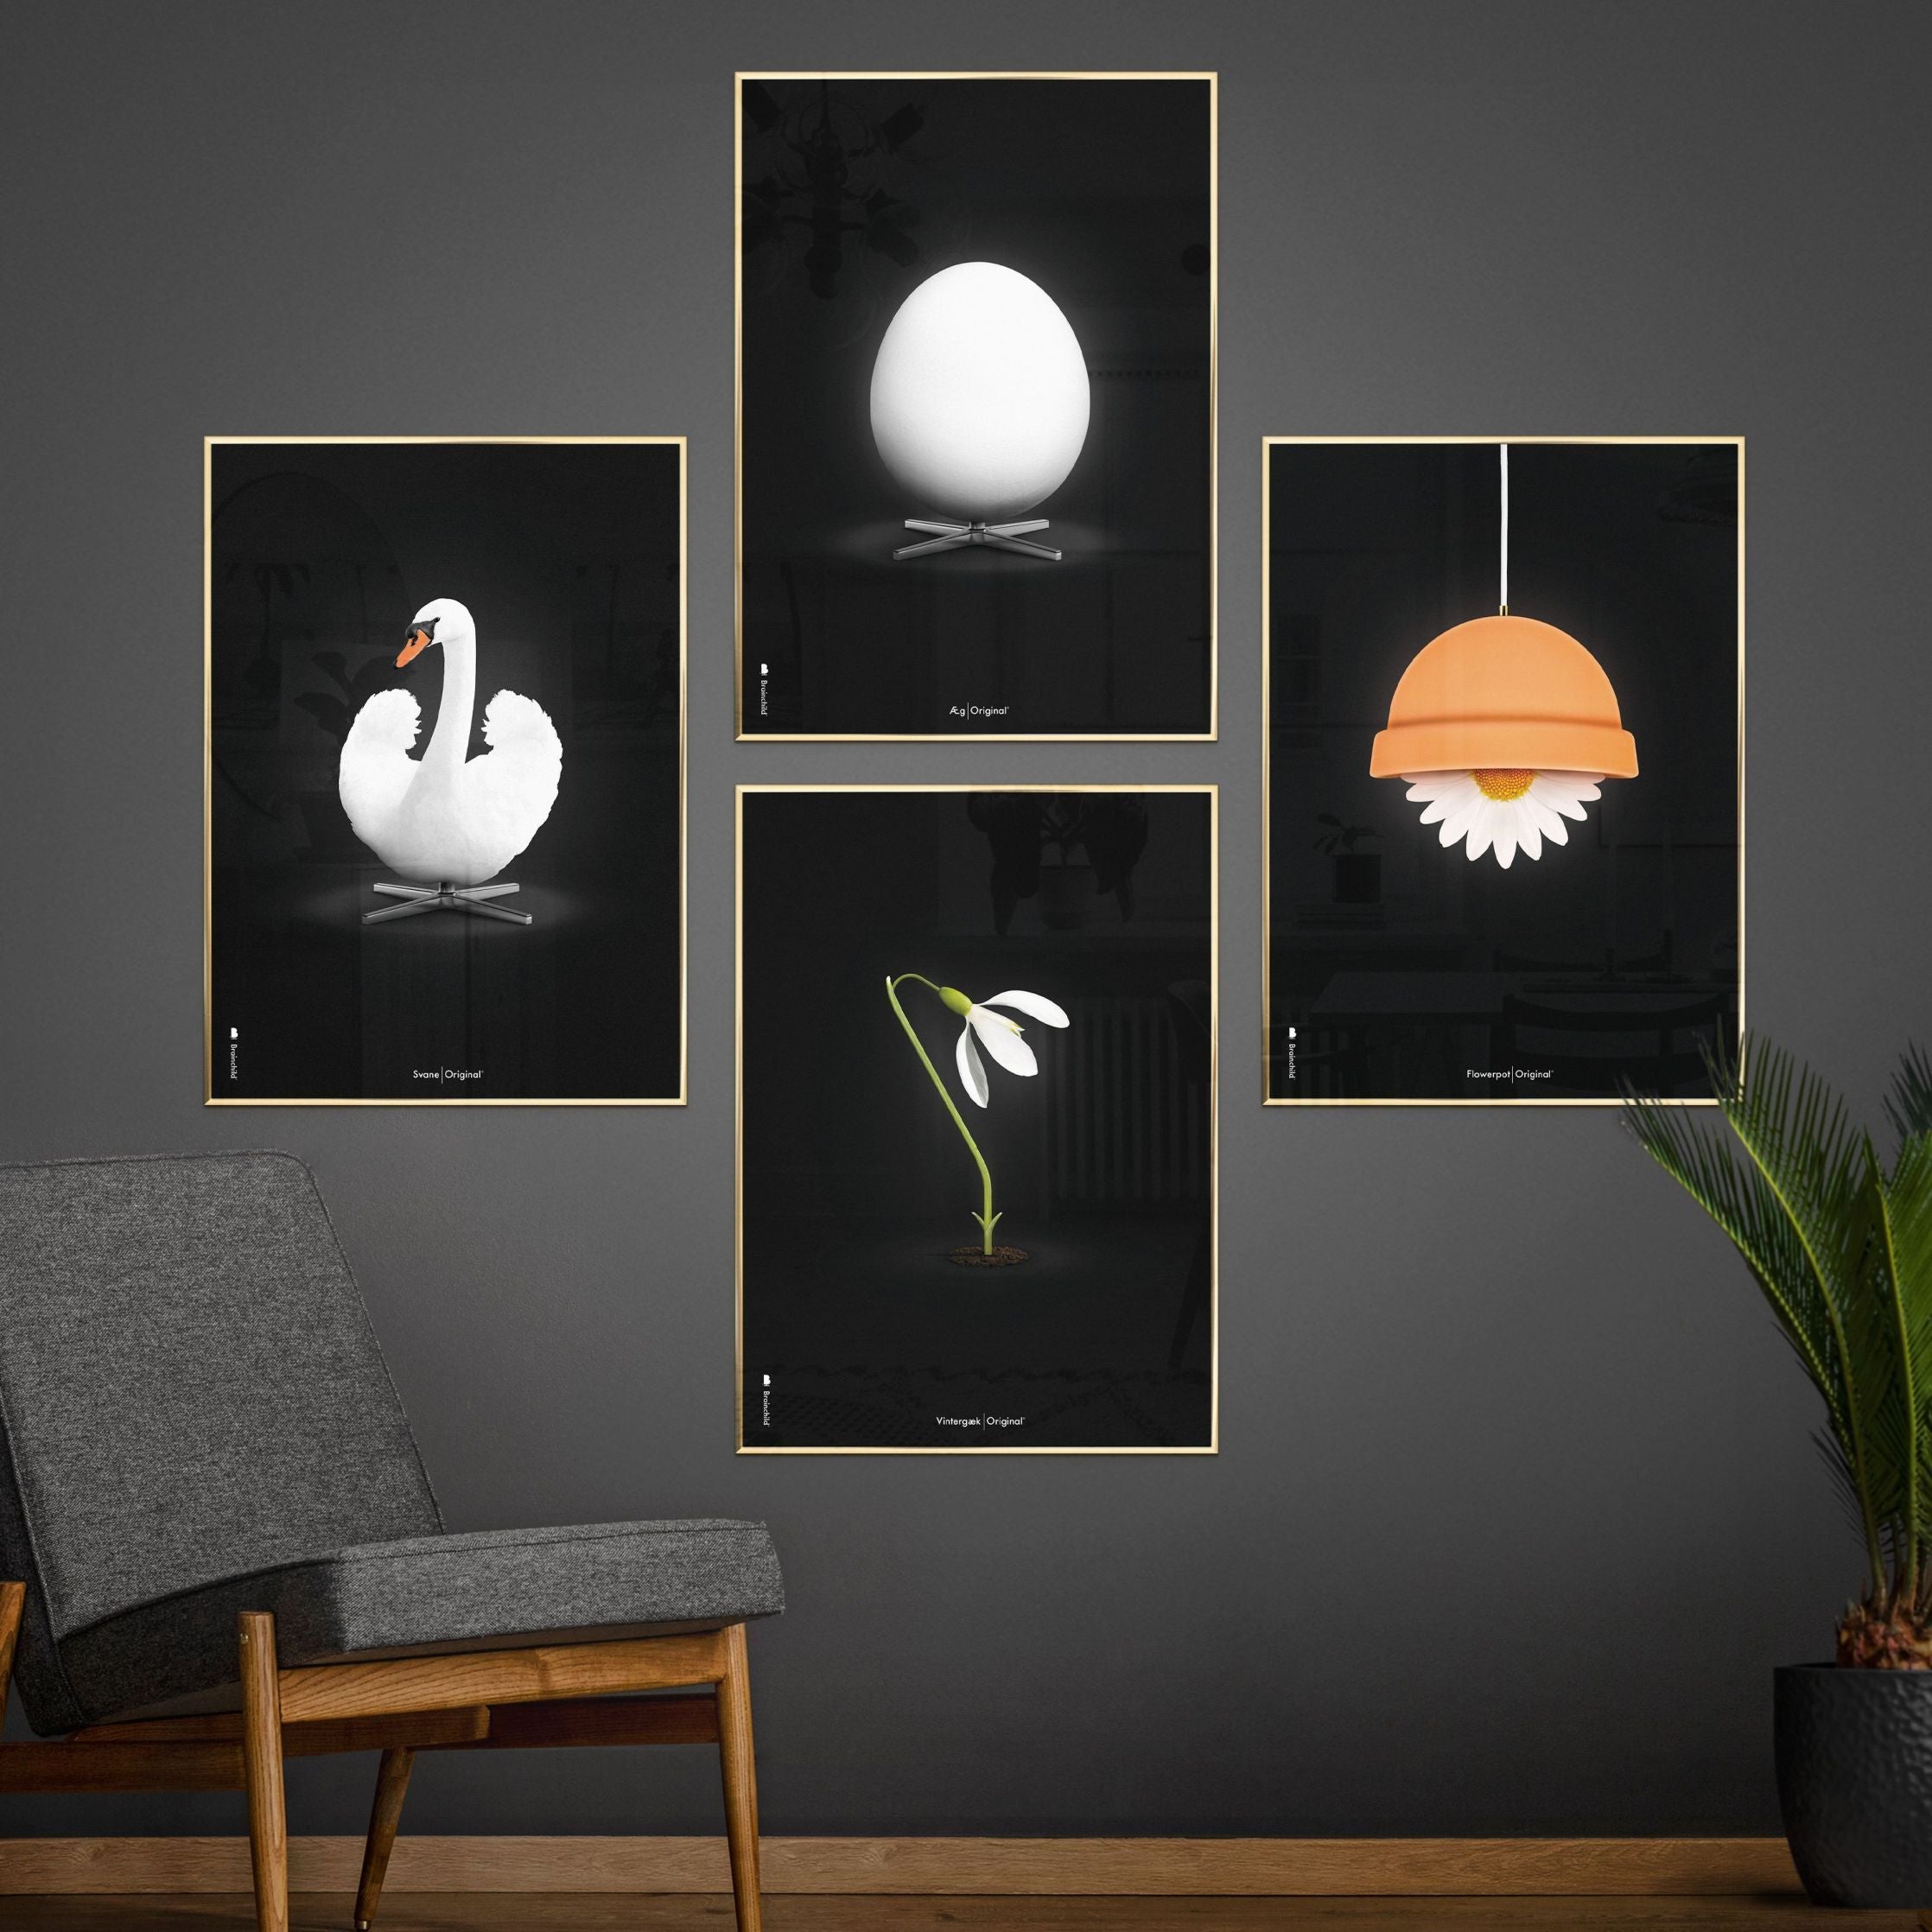 Brainchild Flowerpot Classic -affisch, ram gjord av mörkt trä 50x70 cm, svart bakgrund